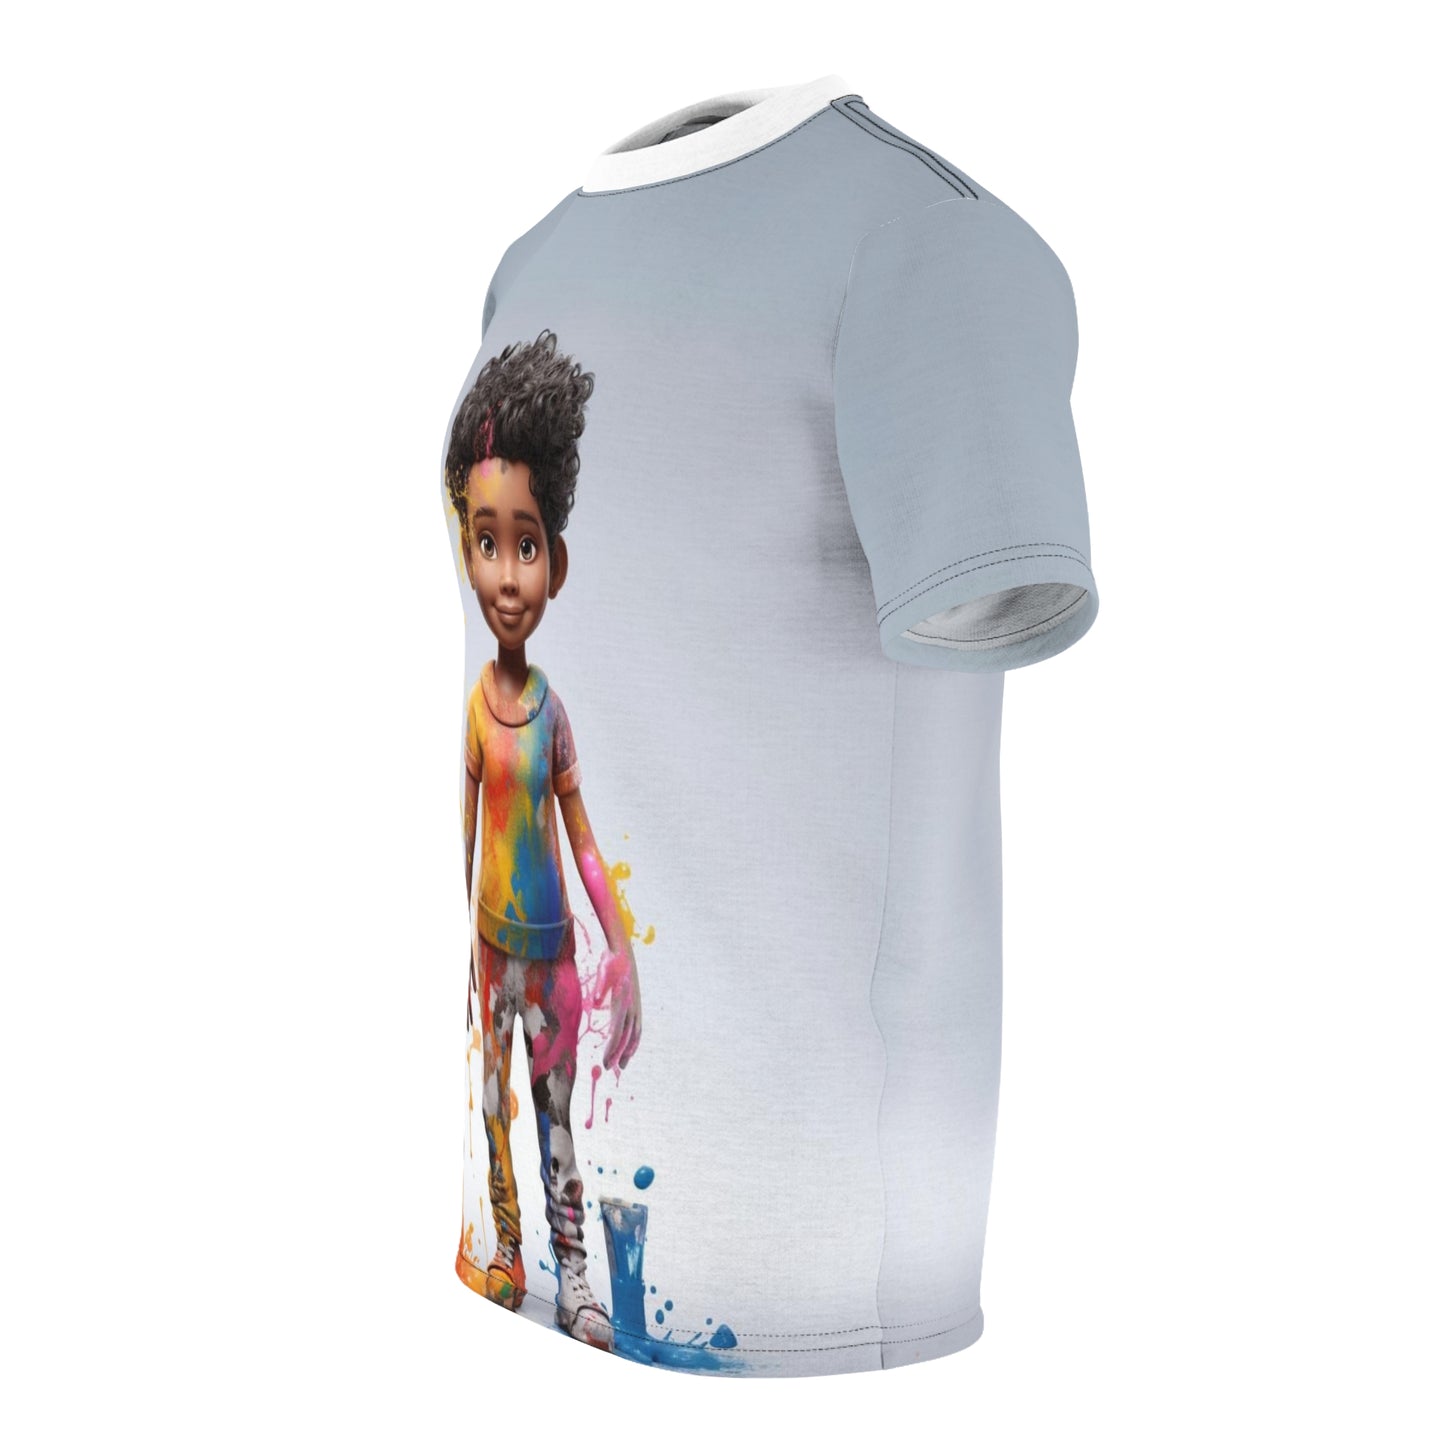 KEEVO - J'ouvert Girl Premium Lightweight T-shirt